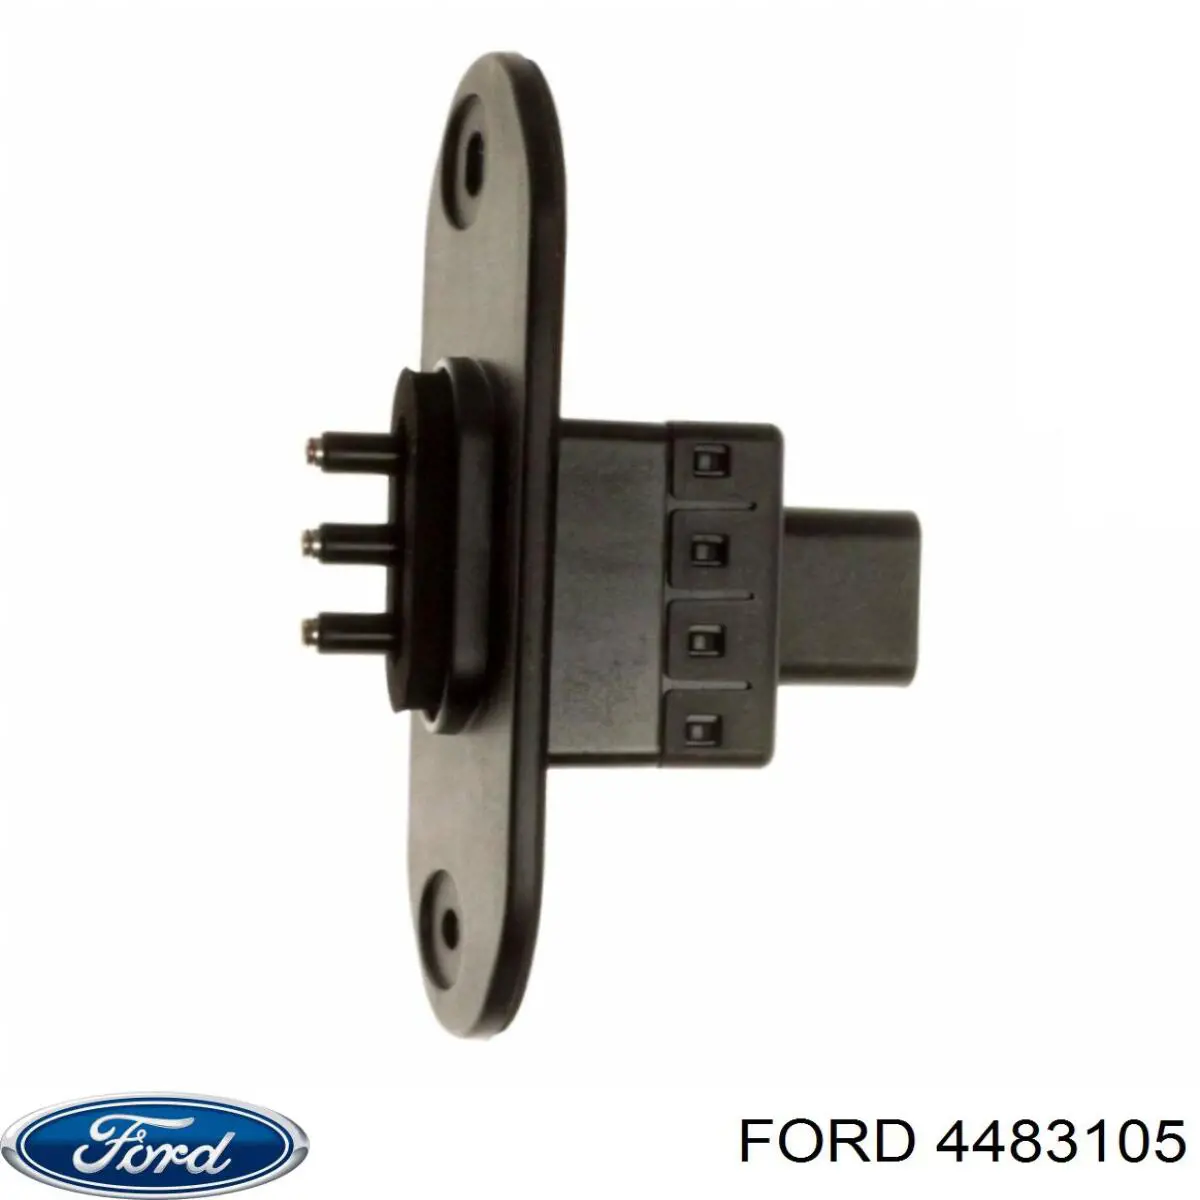 1800639 Ford датчик закрывания дверей (концевой выключатель, сдвижной двери, на кузове)